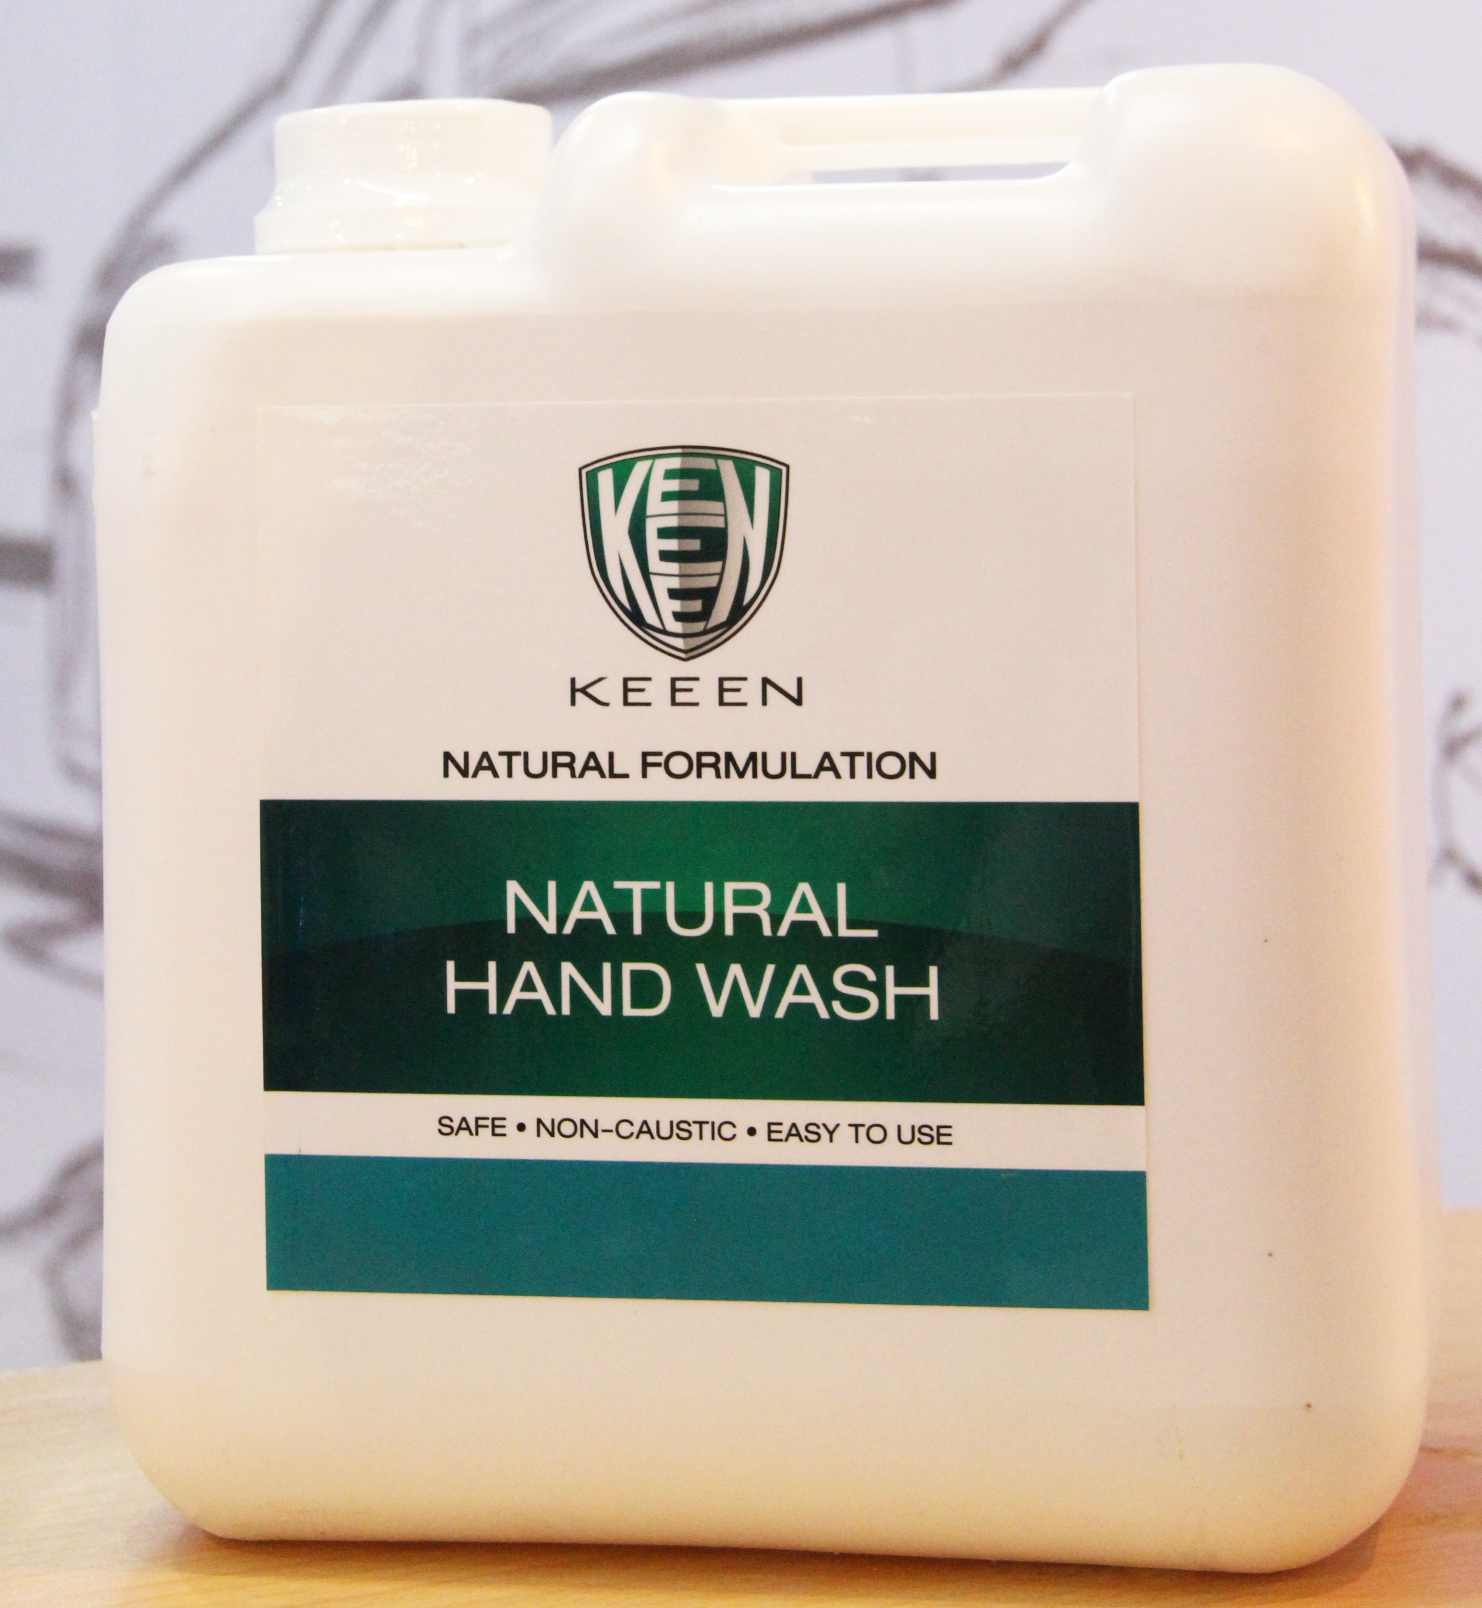 05 - Natural Hand Wash